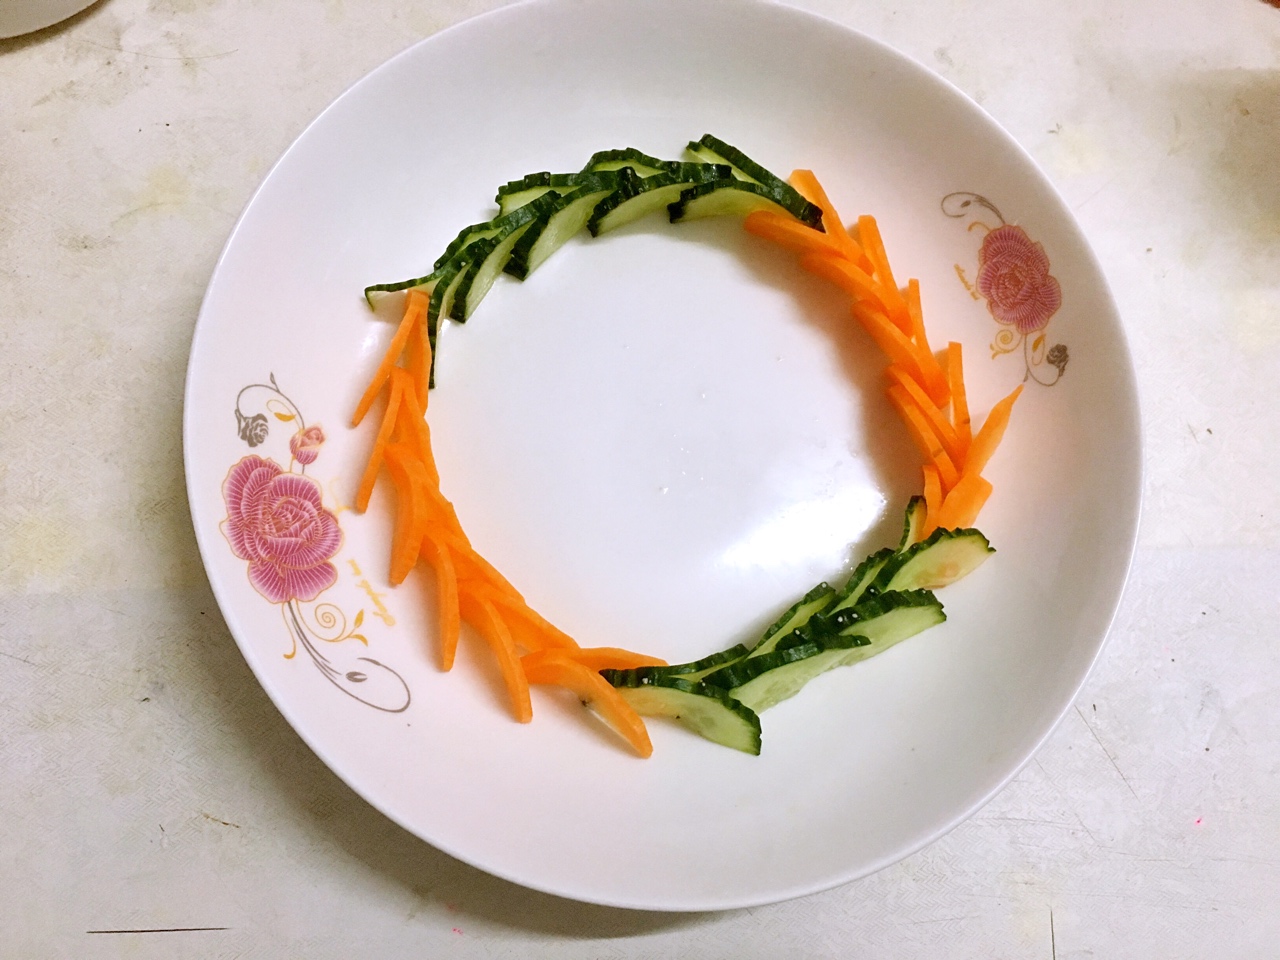 林林家的猫做的黄瓜胡萝卜版的【一条龙】盘饰